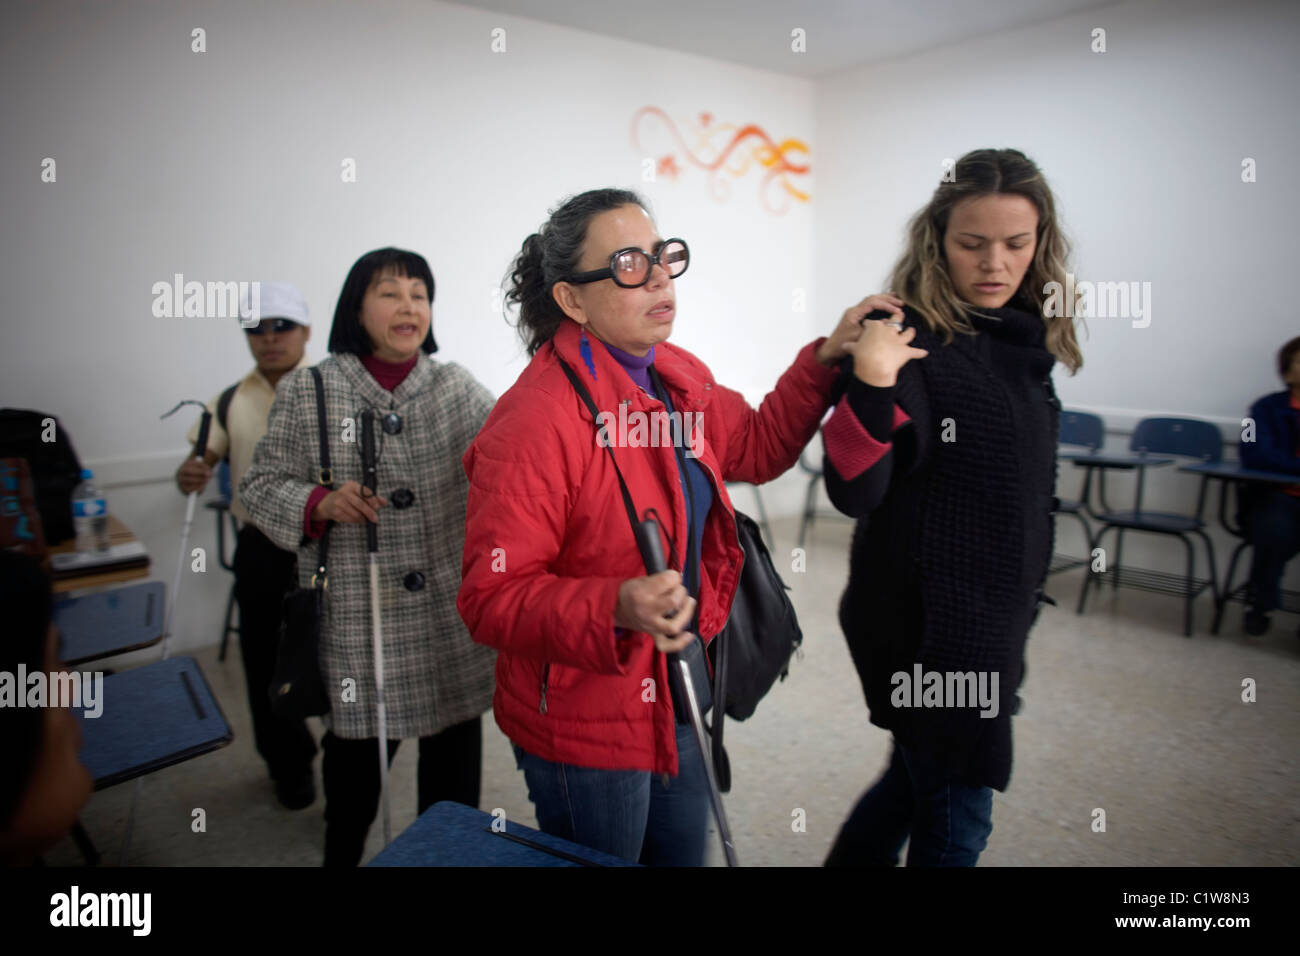 Gina Badenoch étudiants aveugles guides lors d'un atelier de photographie pour les aveugles et malvoyants à Mexico Banque D'Images